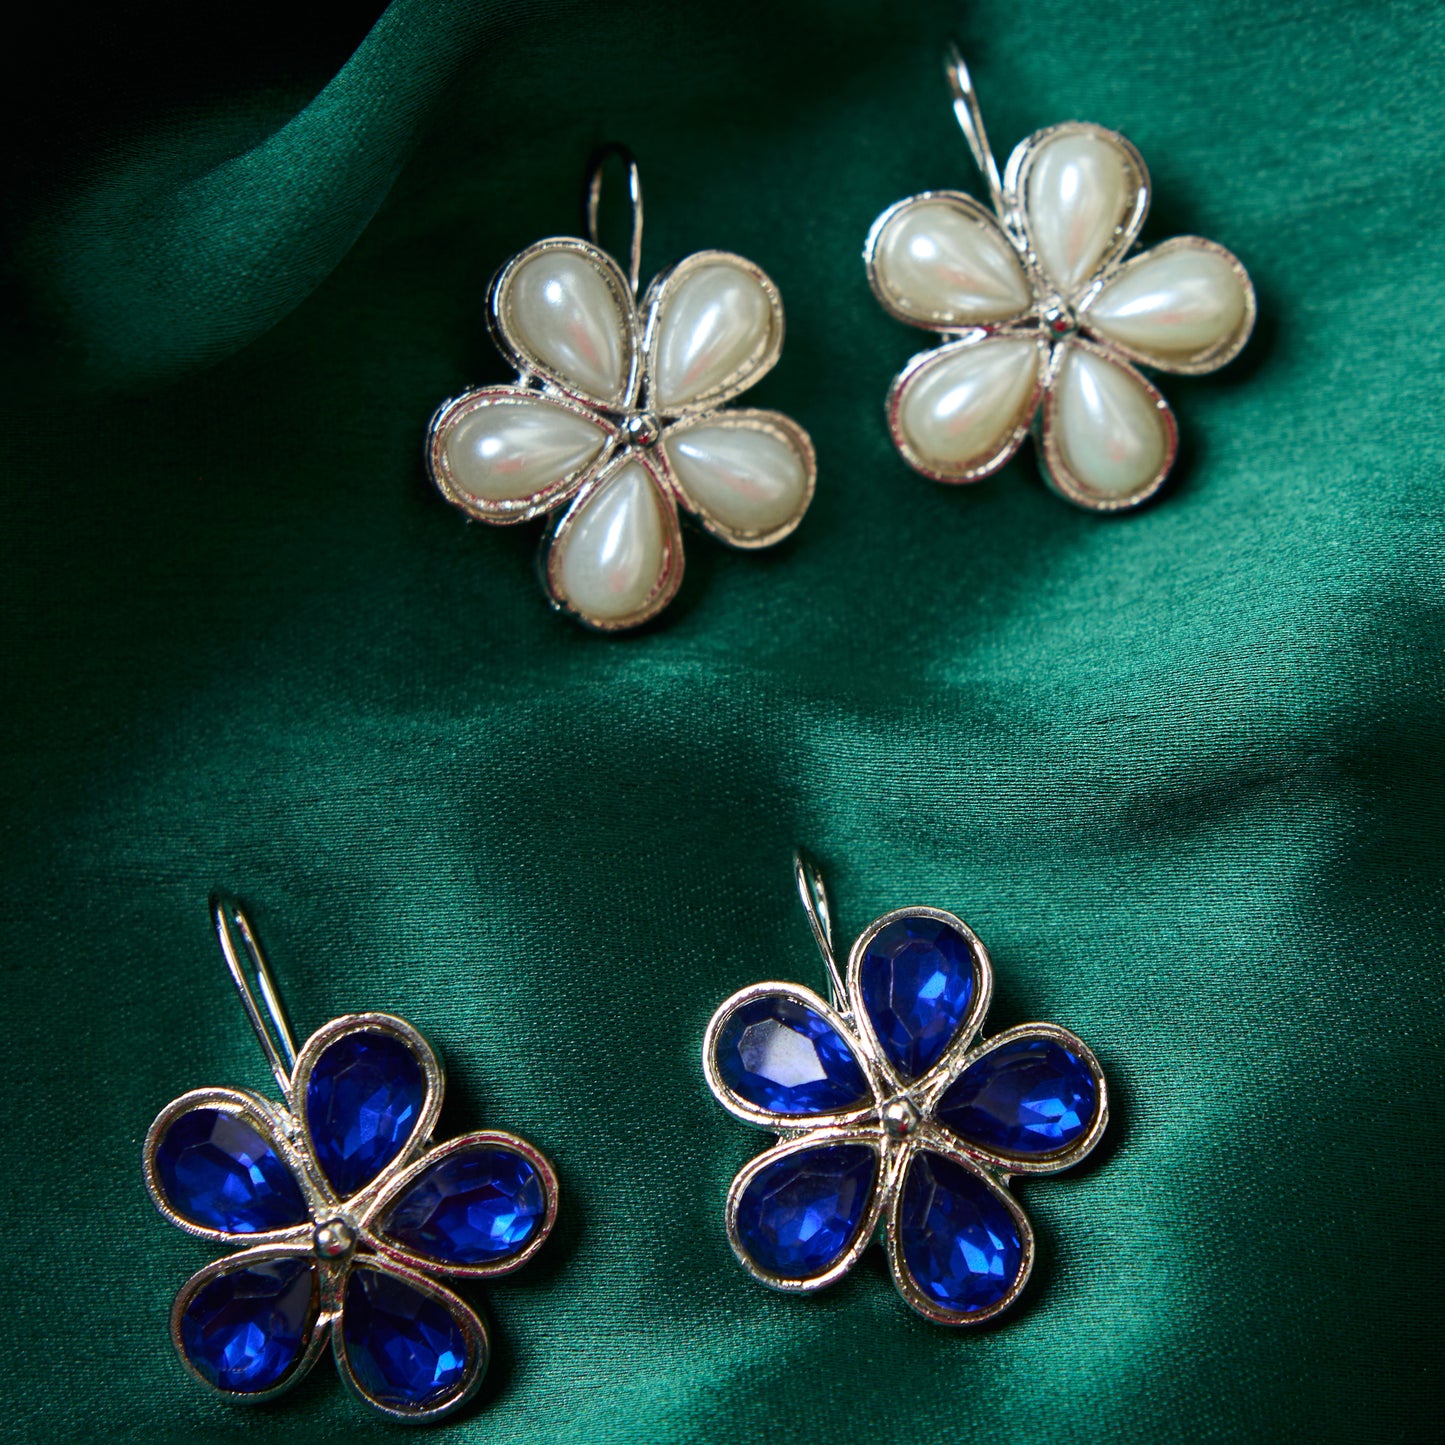 Moonstruck Combo flower hook earrings (Pearl & Blue) - www.MoonstruckINC.com